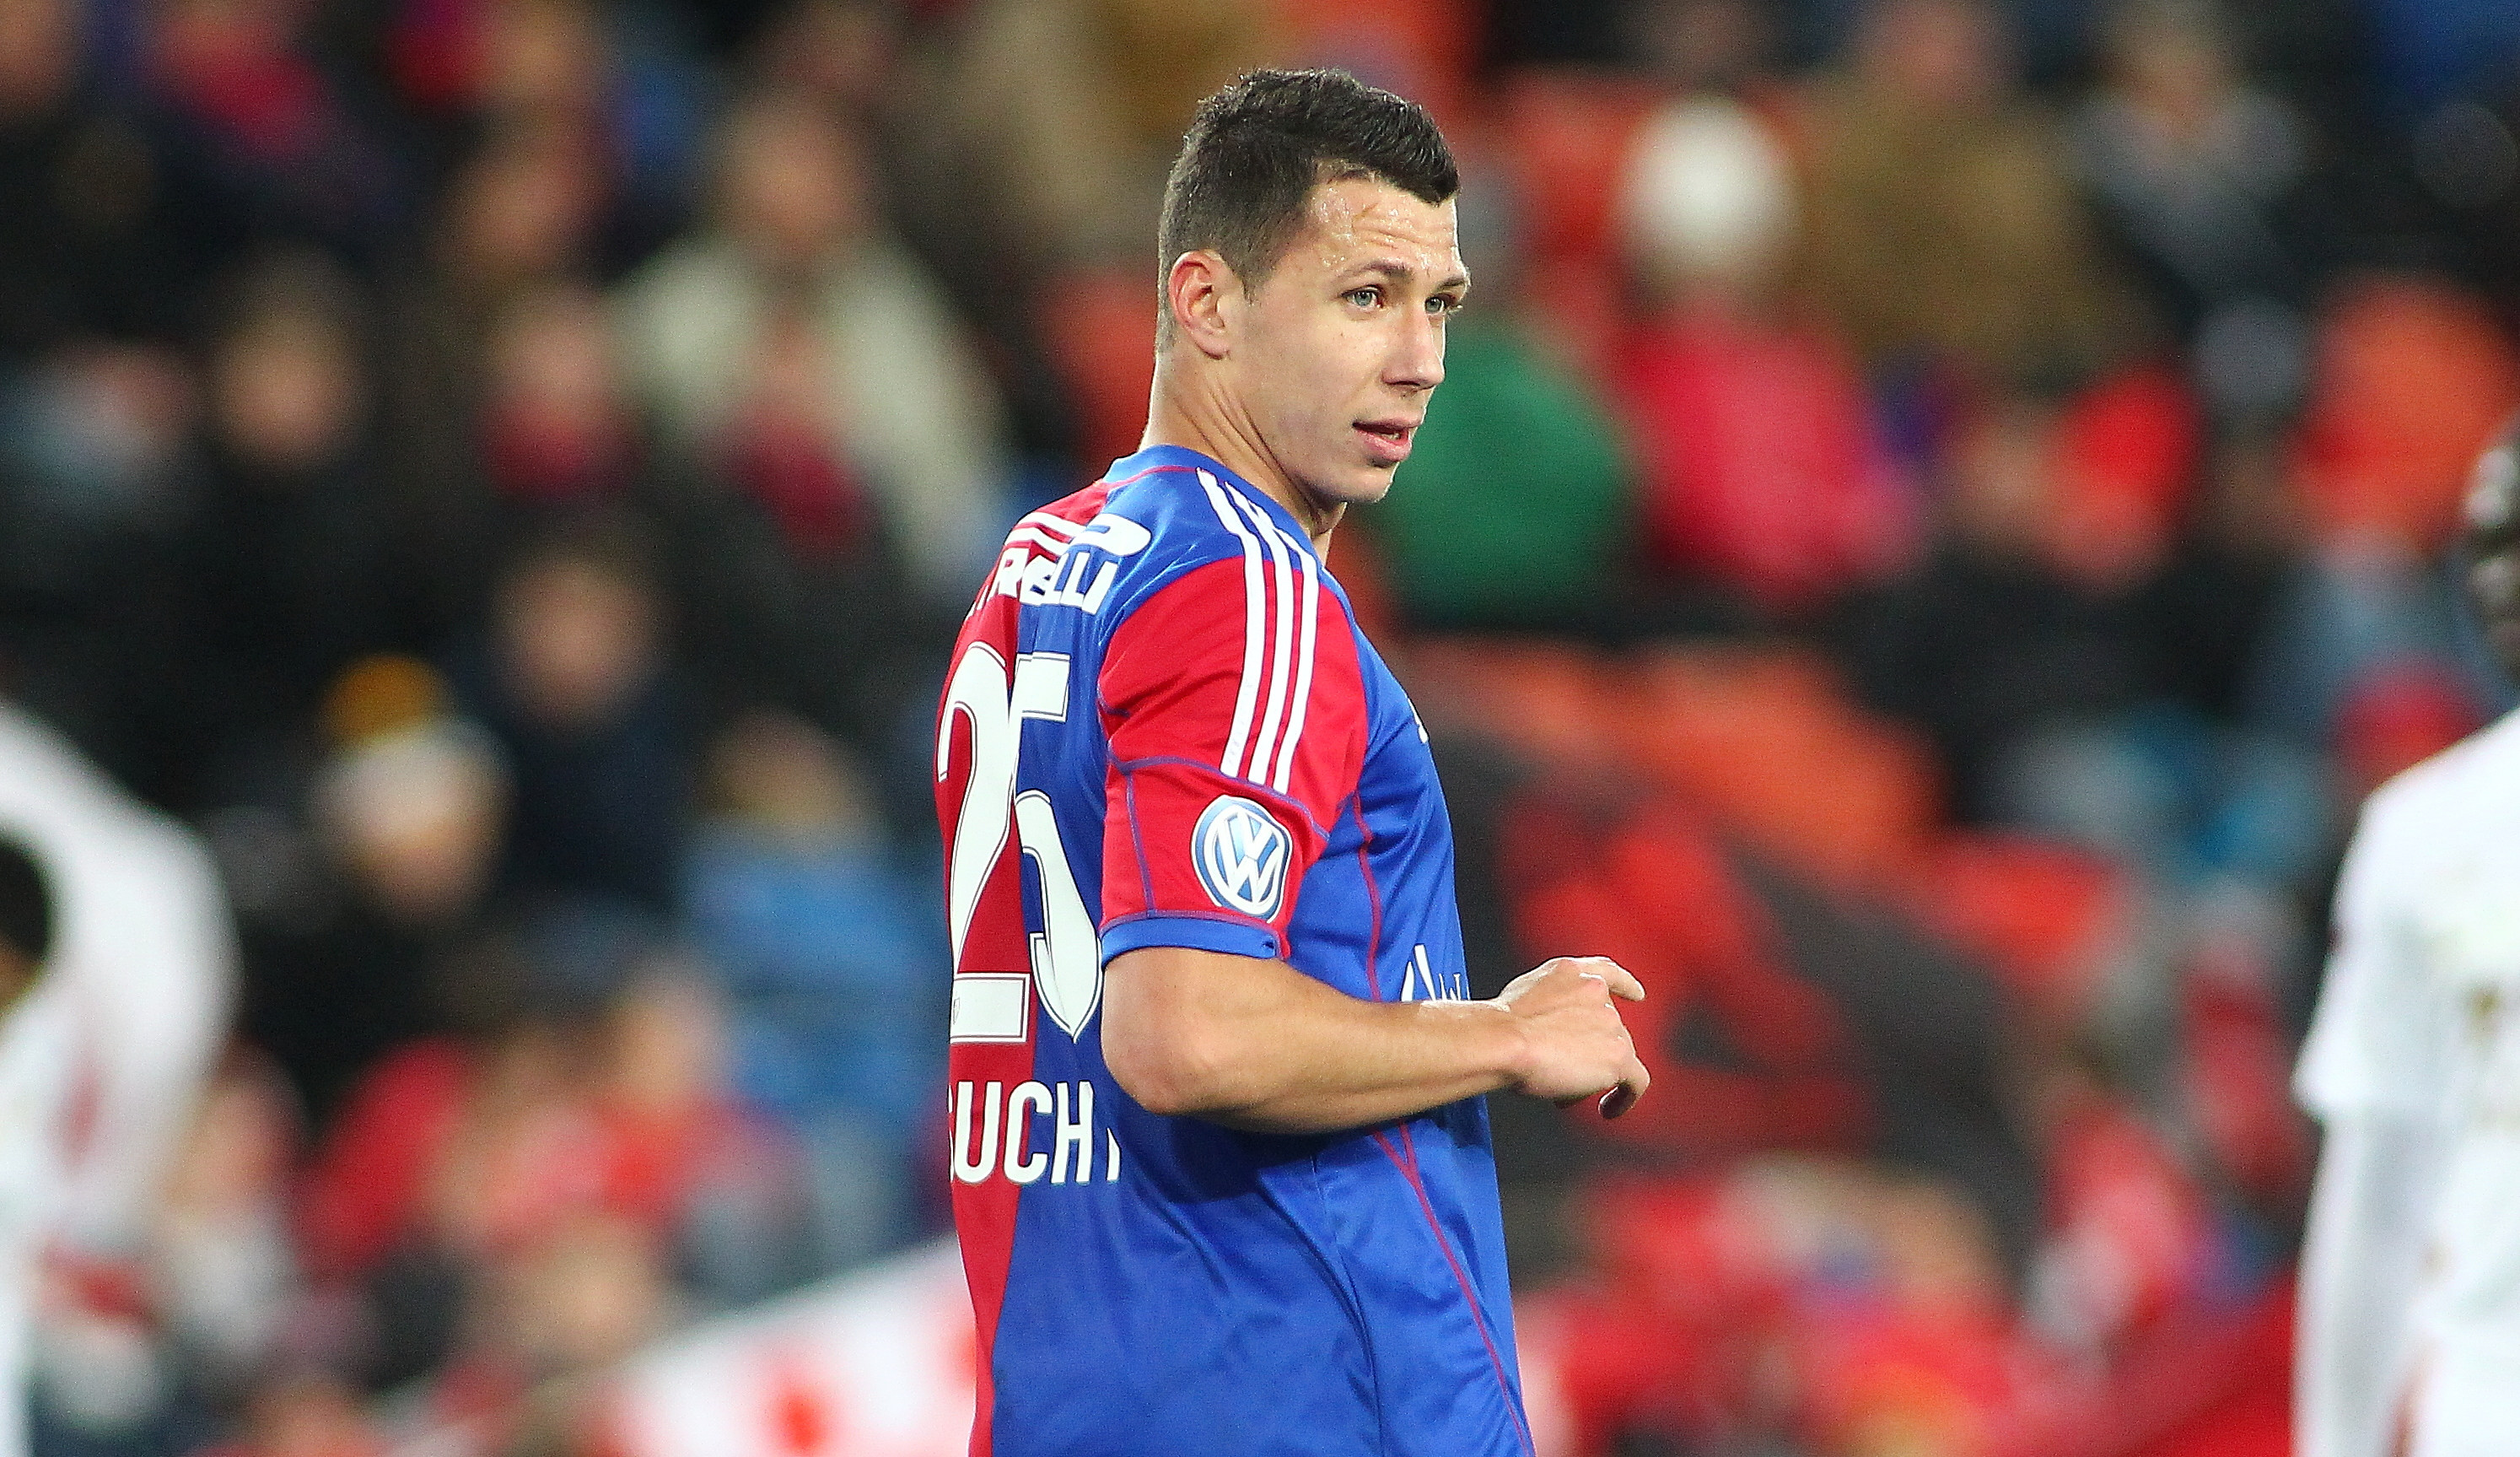 Er will, der FC Basel will – demnächst wird Marek Suchy einen Dreijahresvertrag unterschreiben.